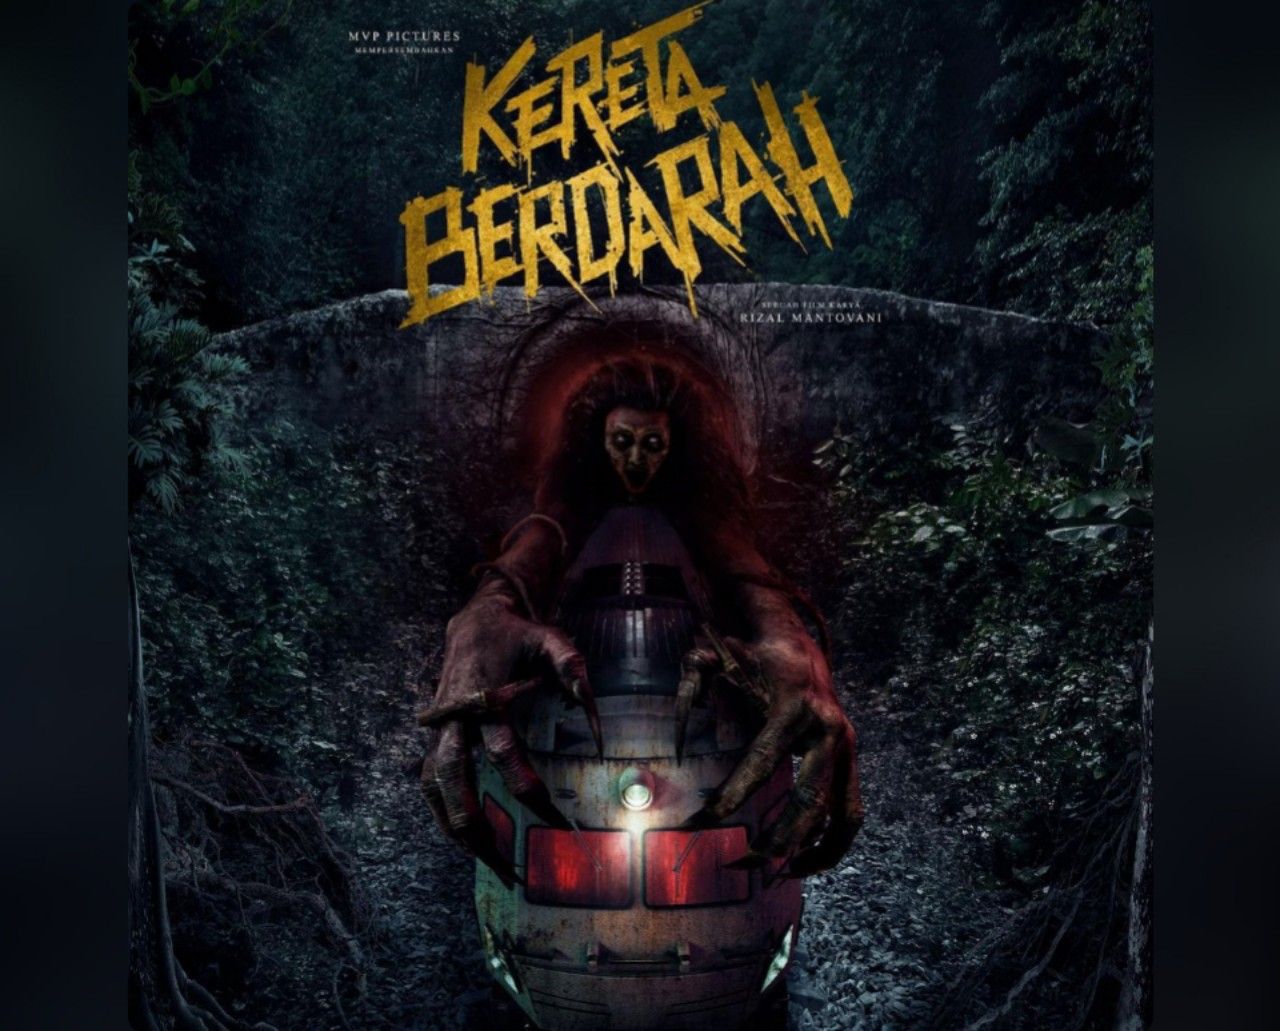 Poster Film Horor Indonesia berjudul Kereta Berdarah garapan Rizal Mantovani.